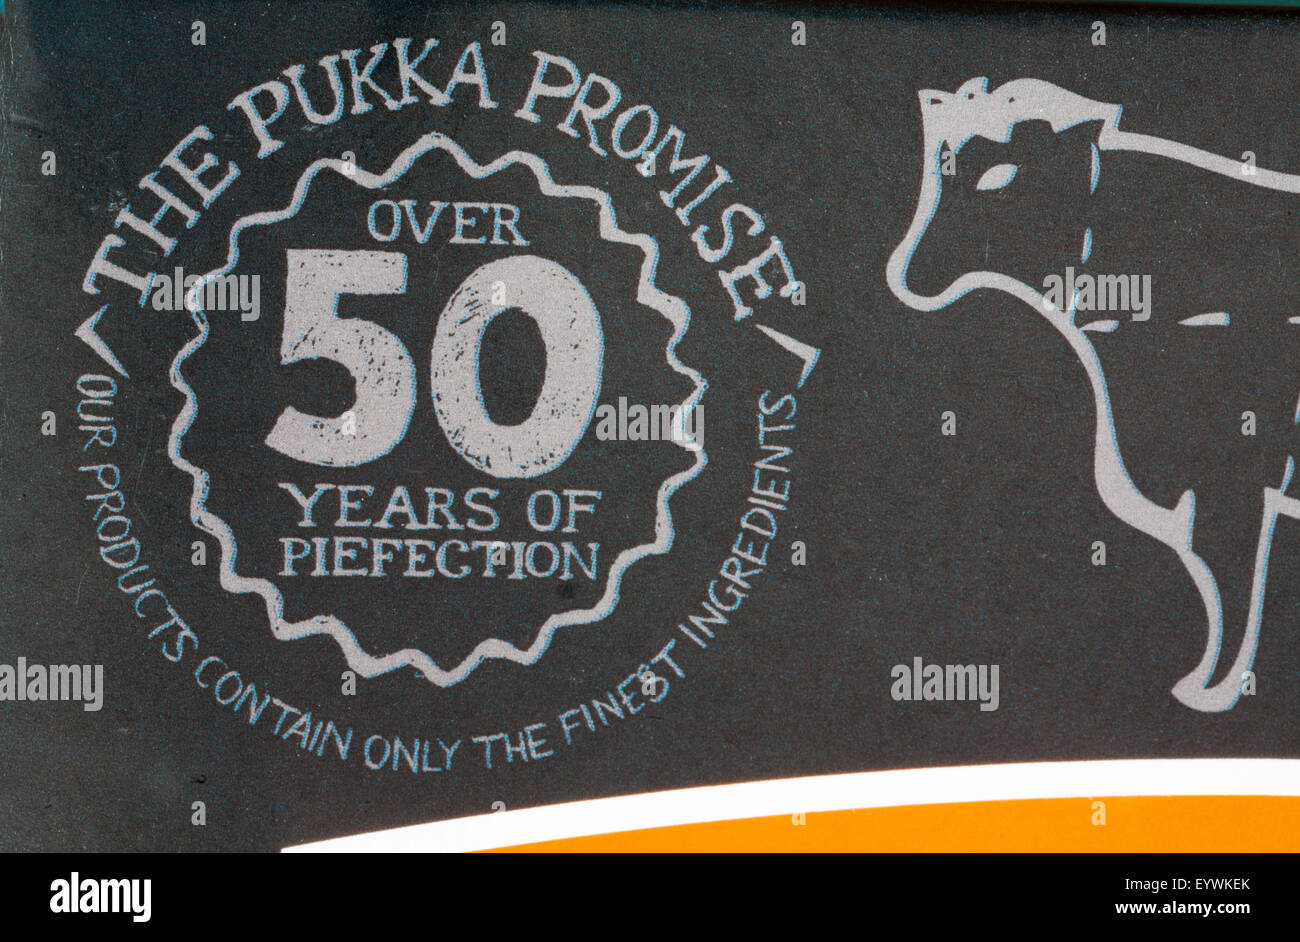 Die Pukka versprechen mehr als 50 Jahre Piefection, dass unsere Produkte nur die besten Zutaten - Informationen auf Pukka-Torten-Box enthalten Stockfoto